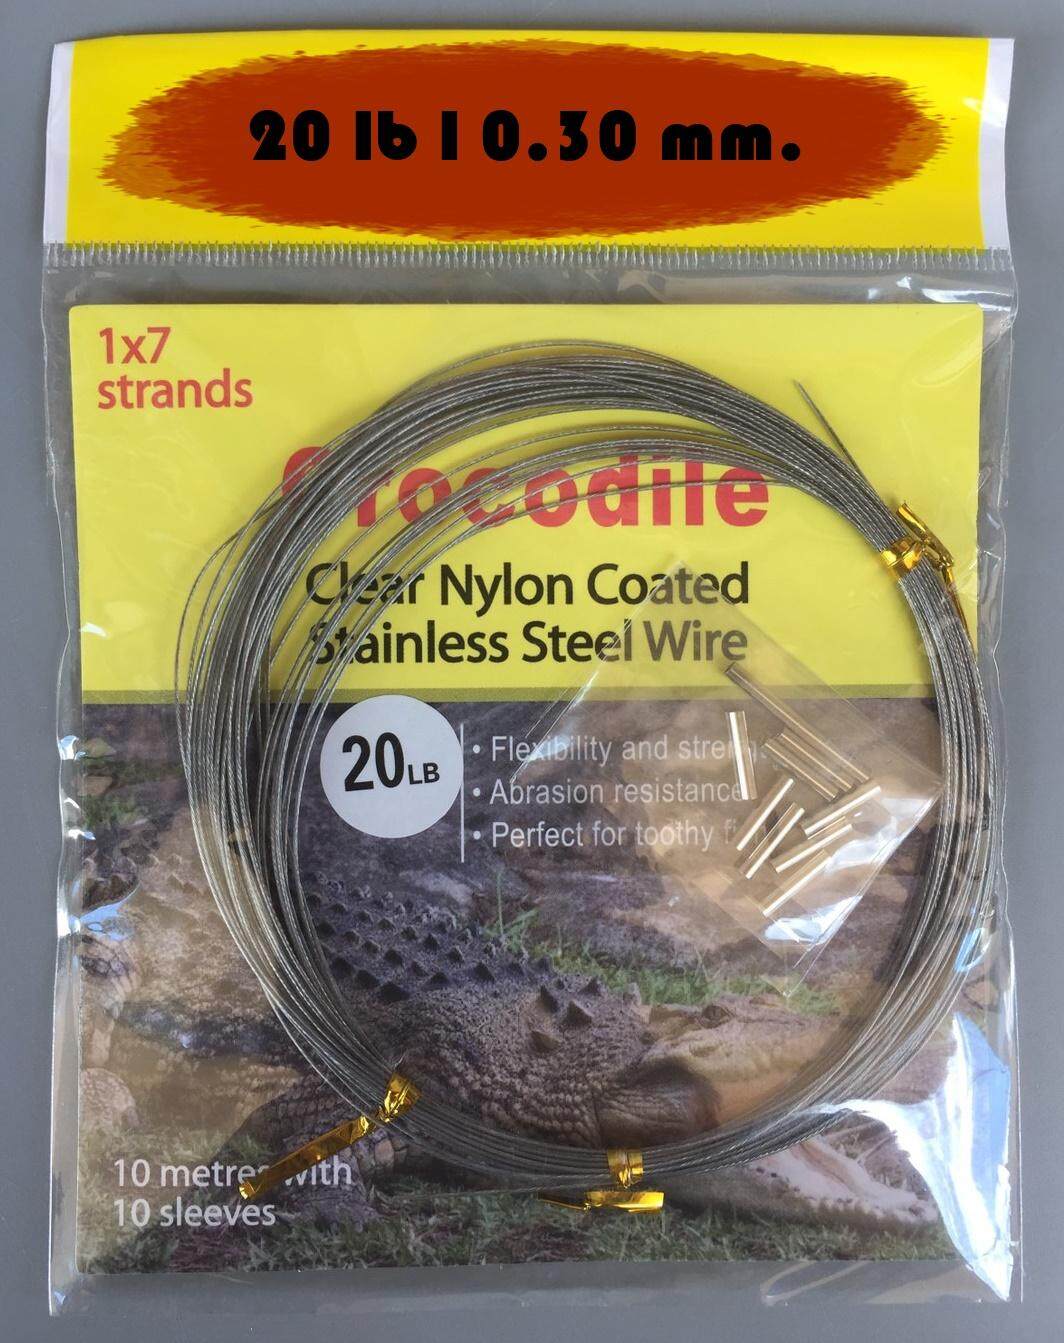 สายสลิงจระเข้ Crocodile Clear Nylon Coated Stainless Steel Wire 1x7 strands